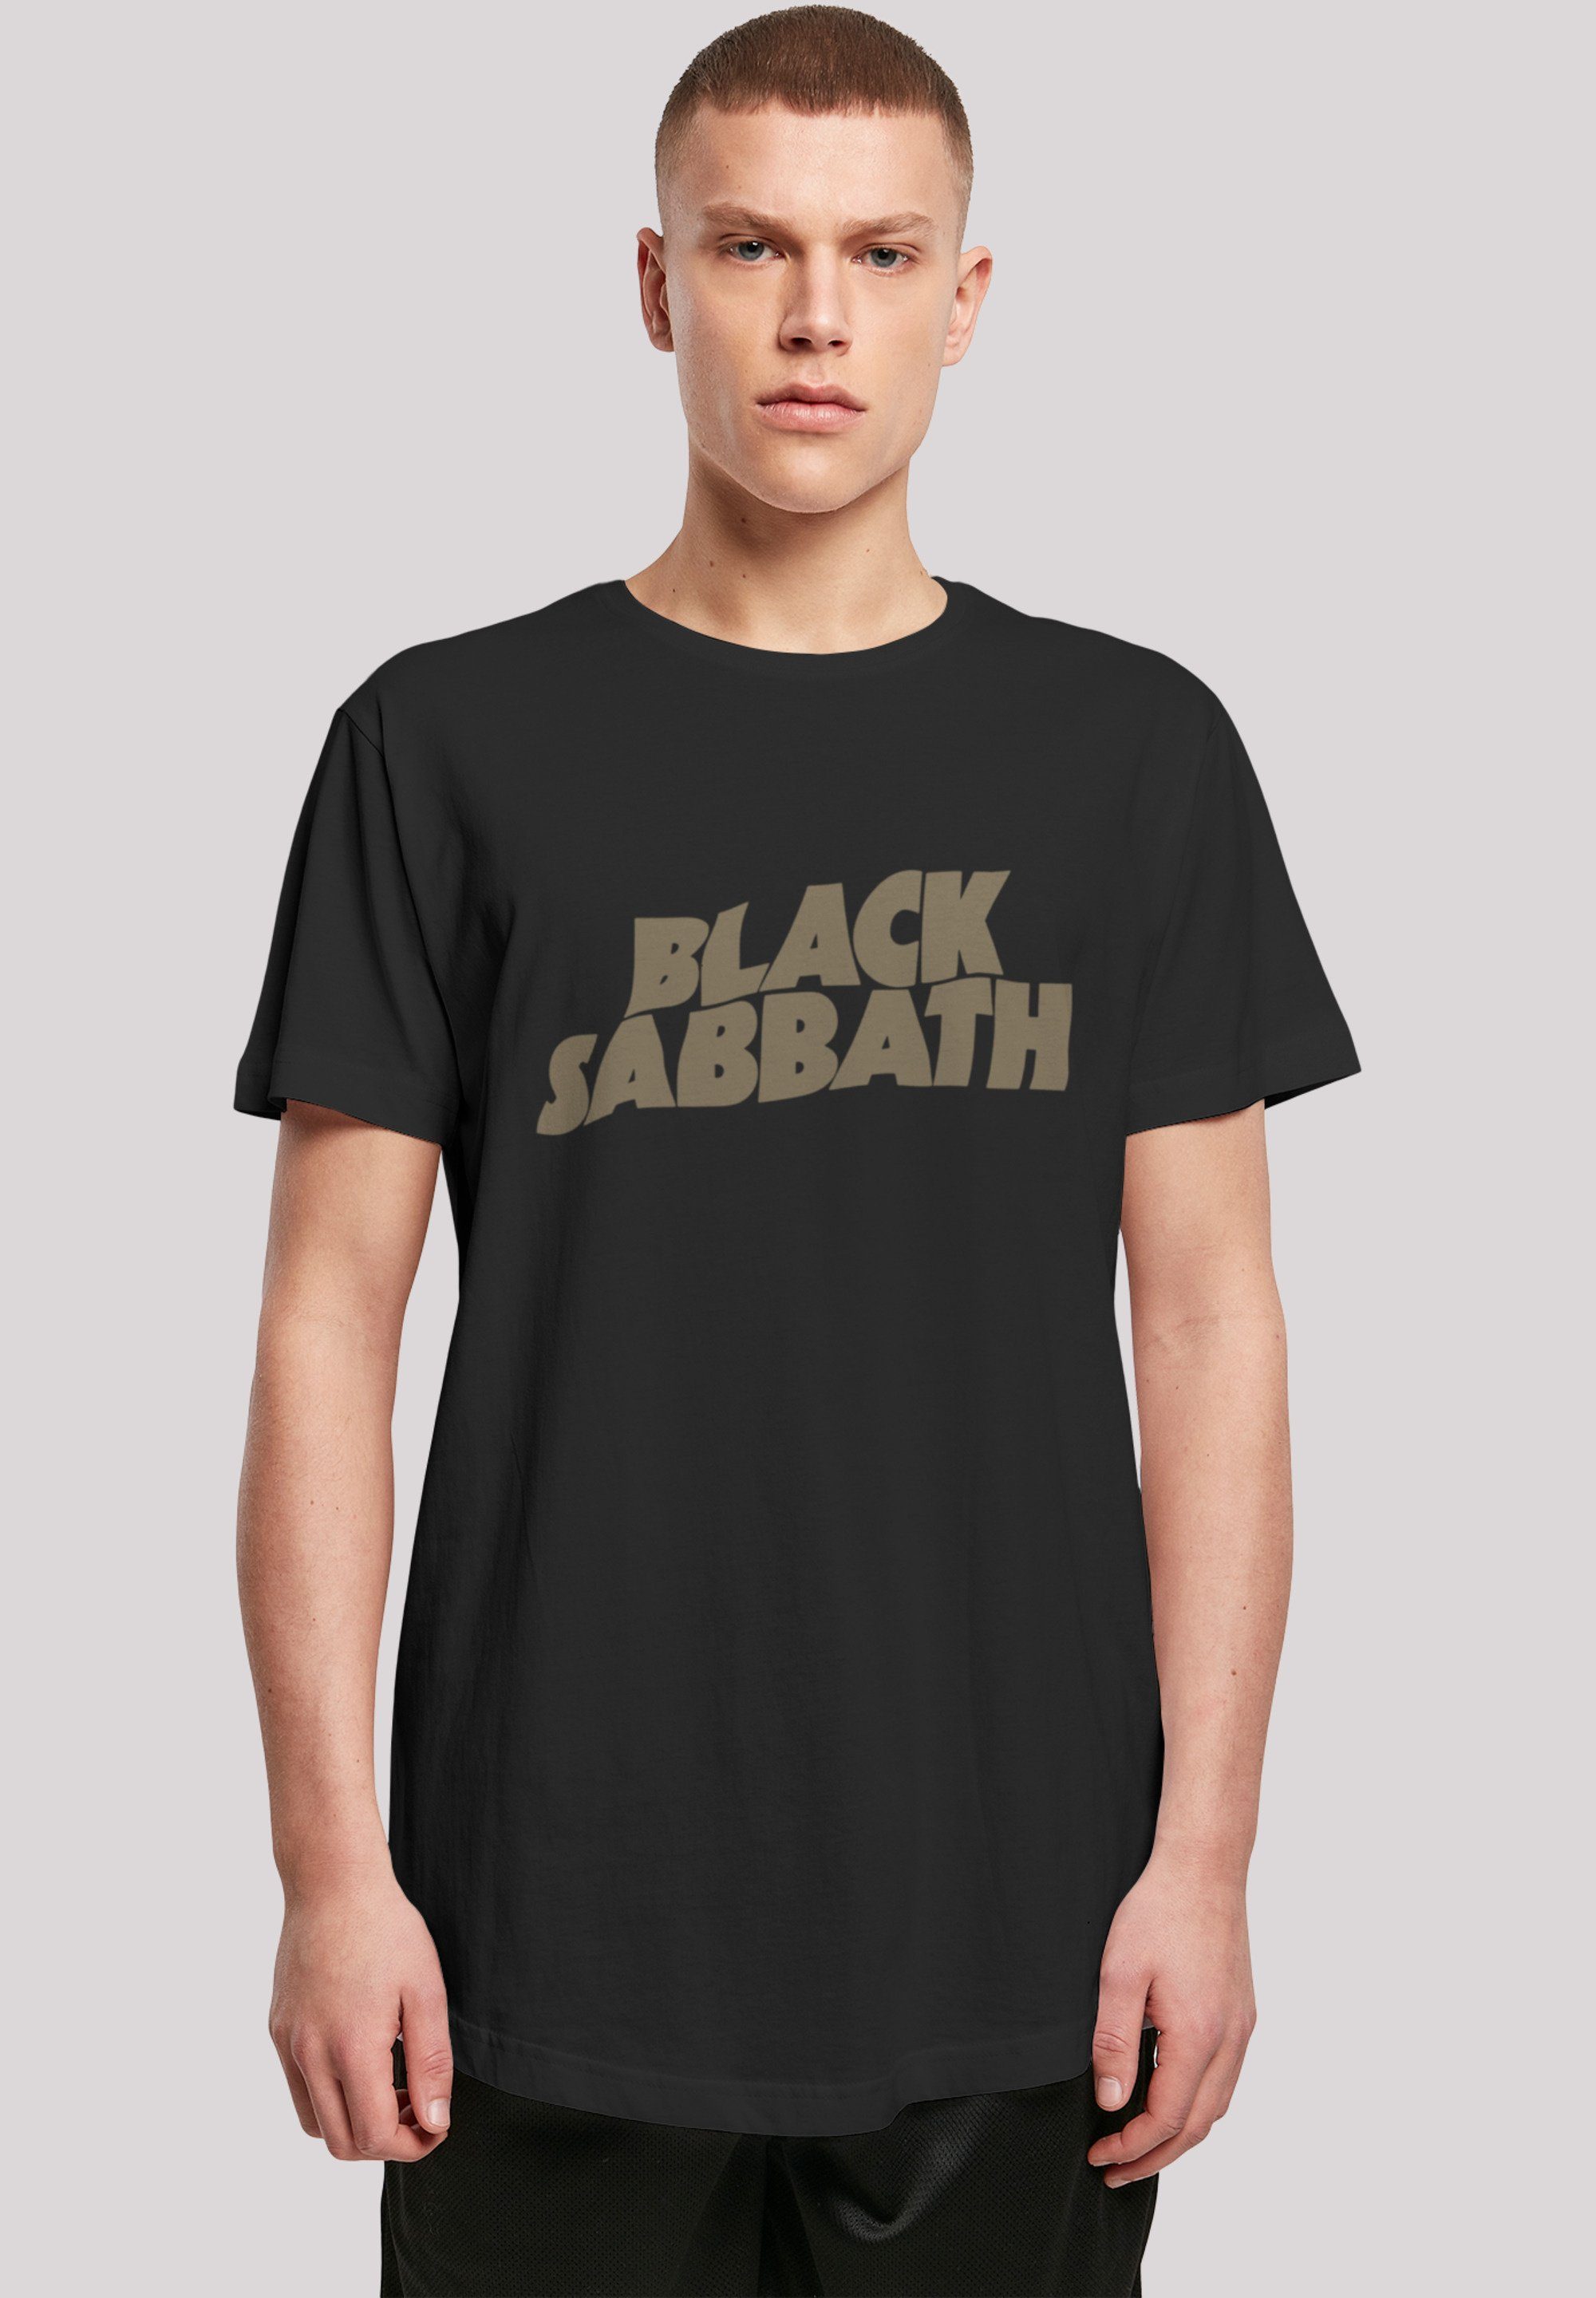 Print, weicher hohem Sabbath 1978 Black Zip Metal Tragekomfort Band US Sehr Baumwollstoff Black Tour T-Shirt F4NT4STIC mit